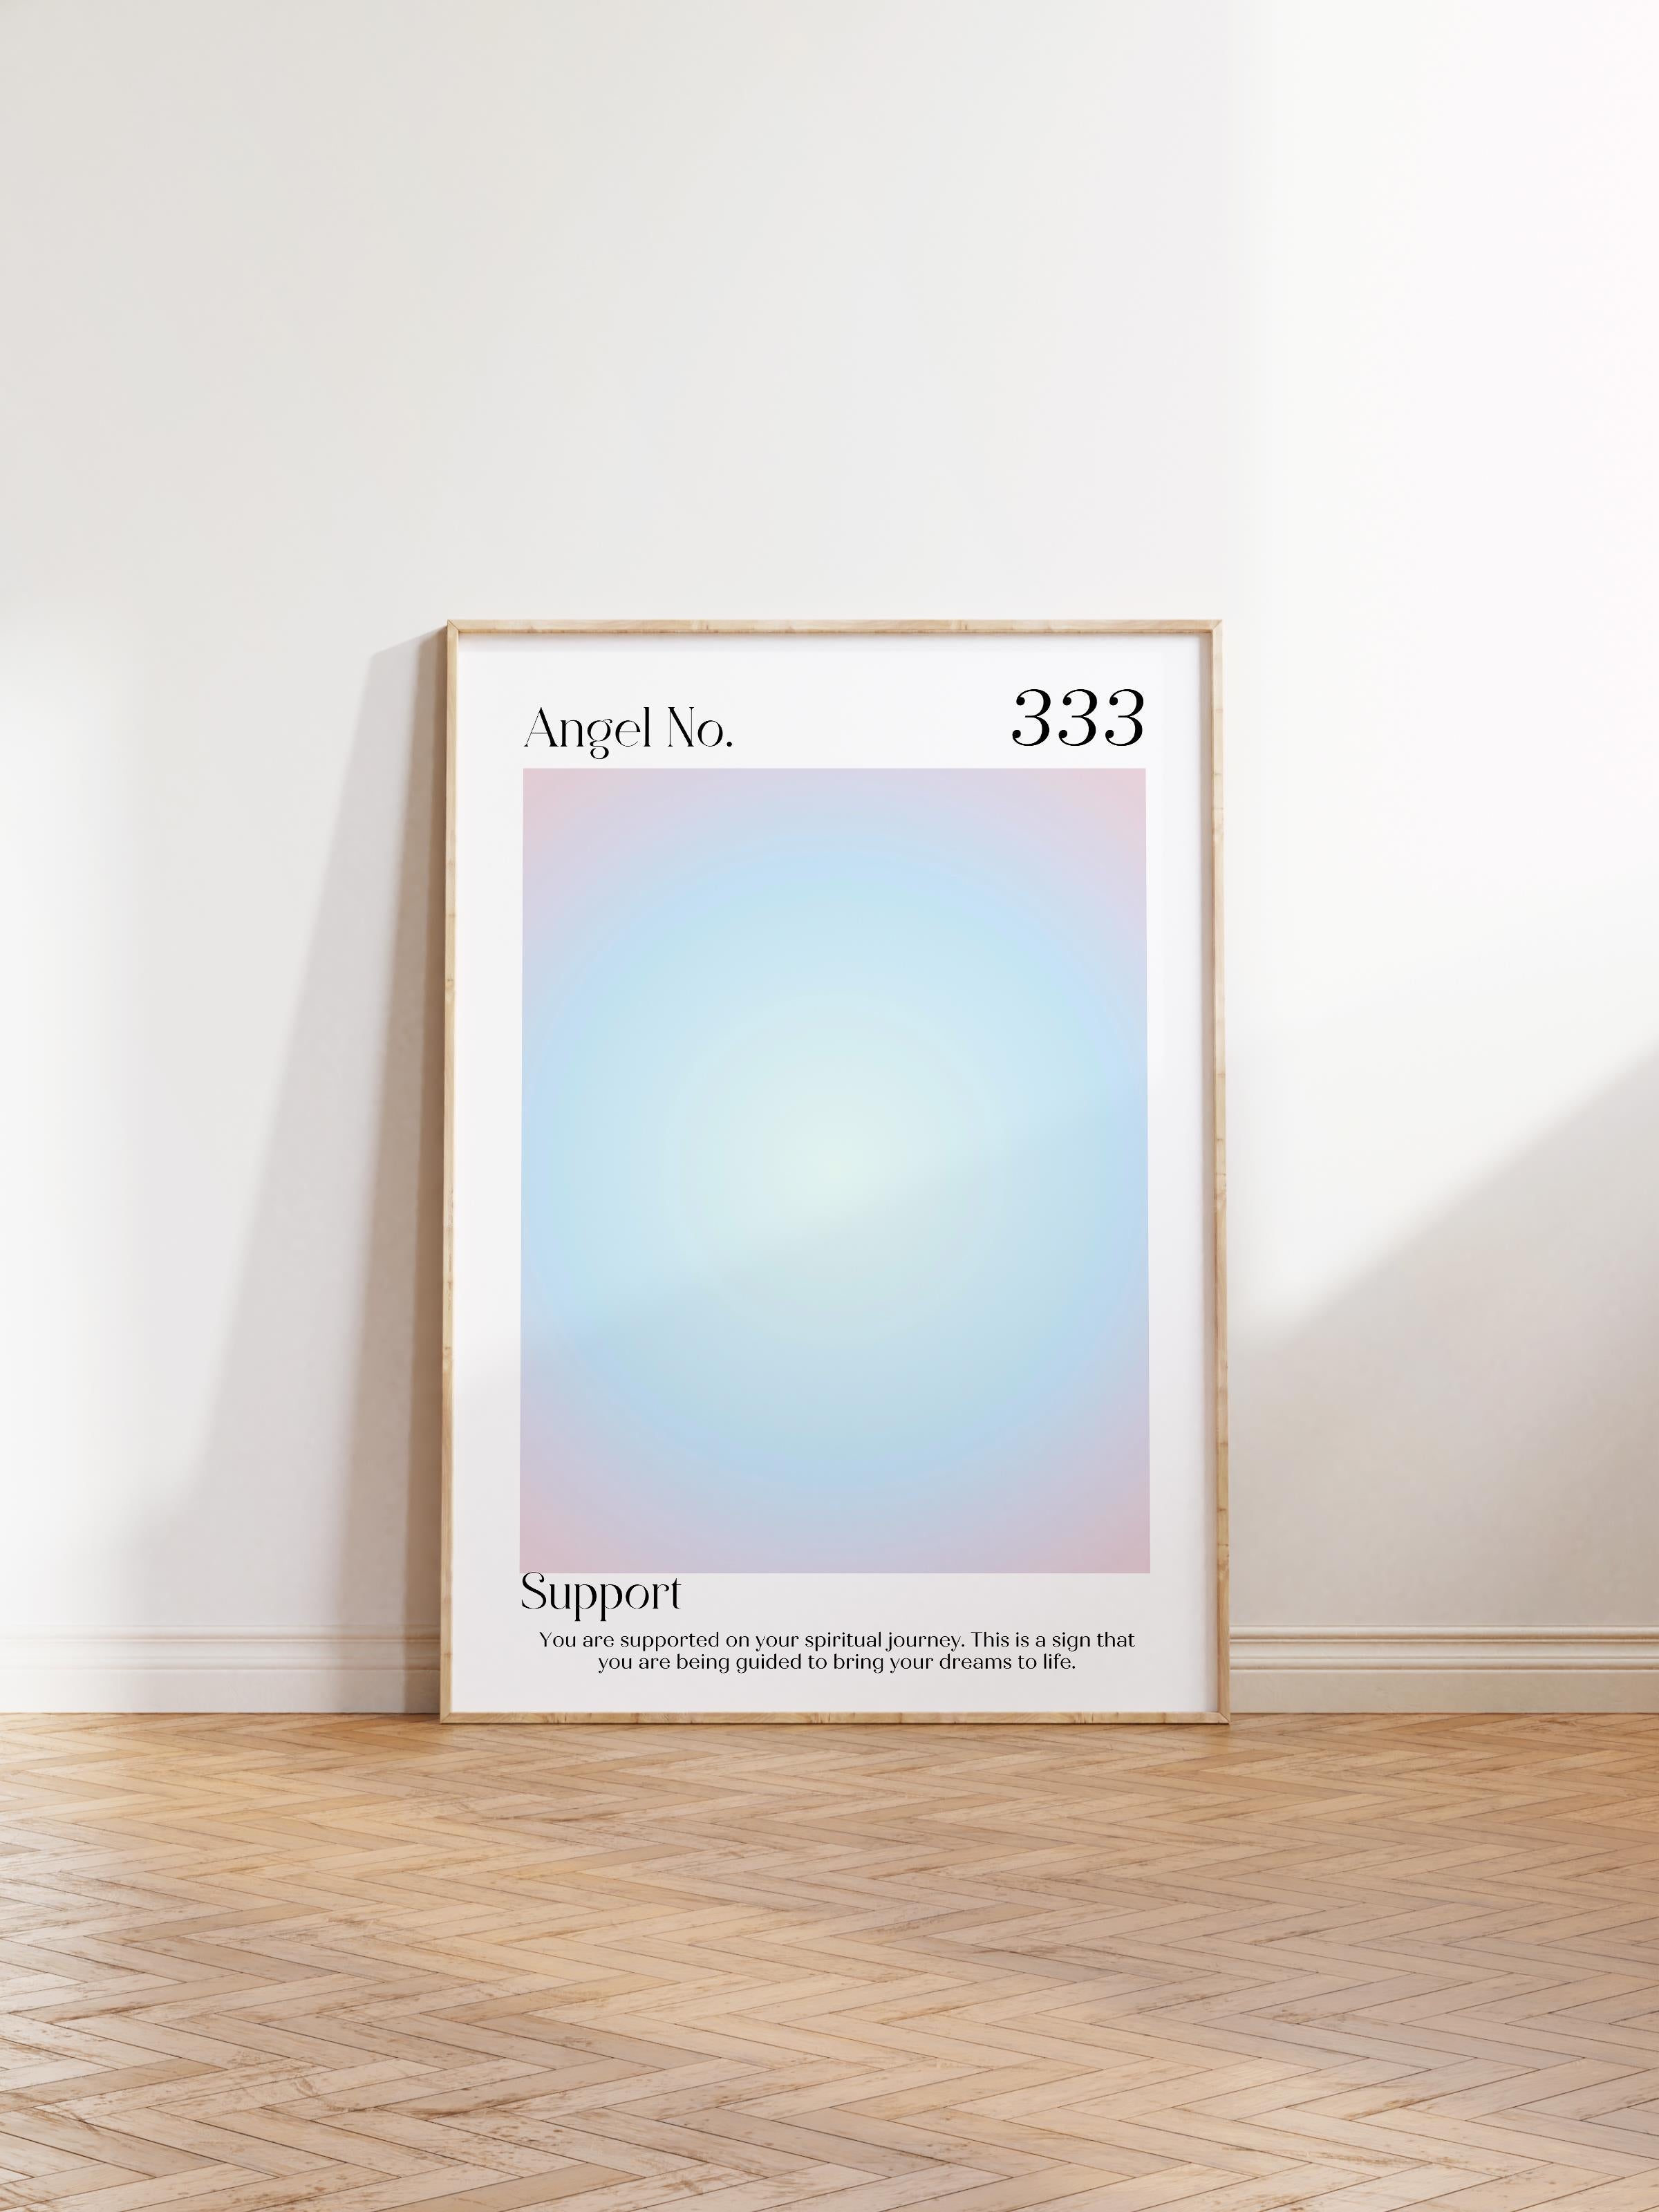 Çerçevesiz Poster, Aura Serisi NO:125 - 333 - Mavi, Melek Numaraları, Renkli Poster